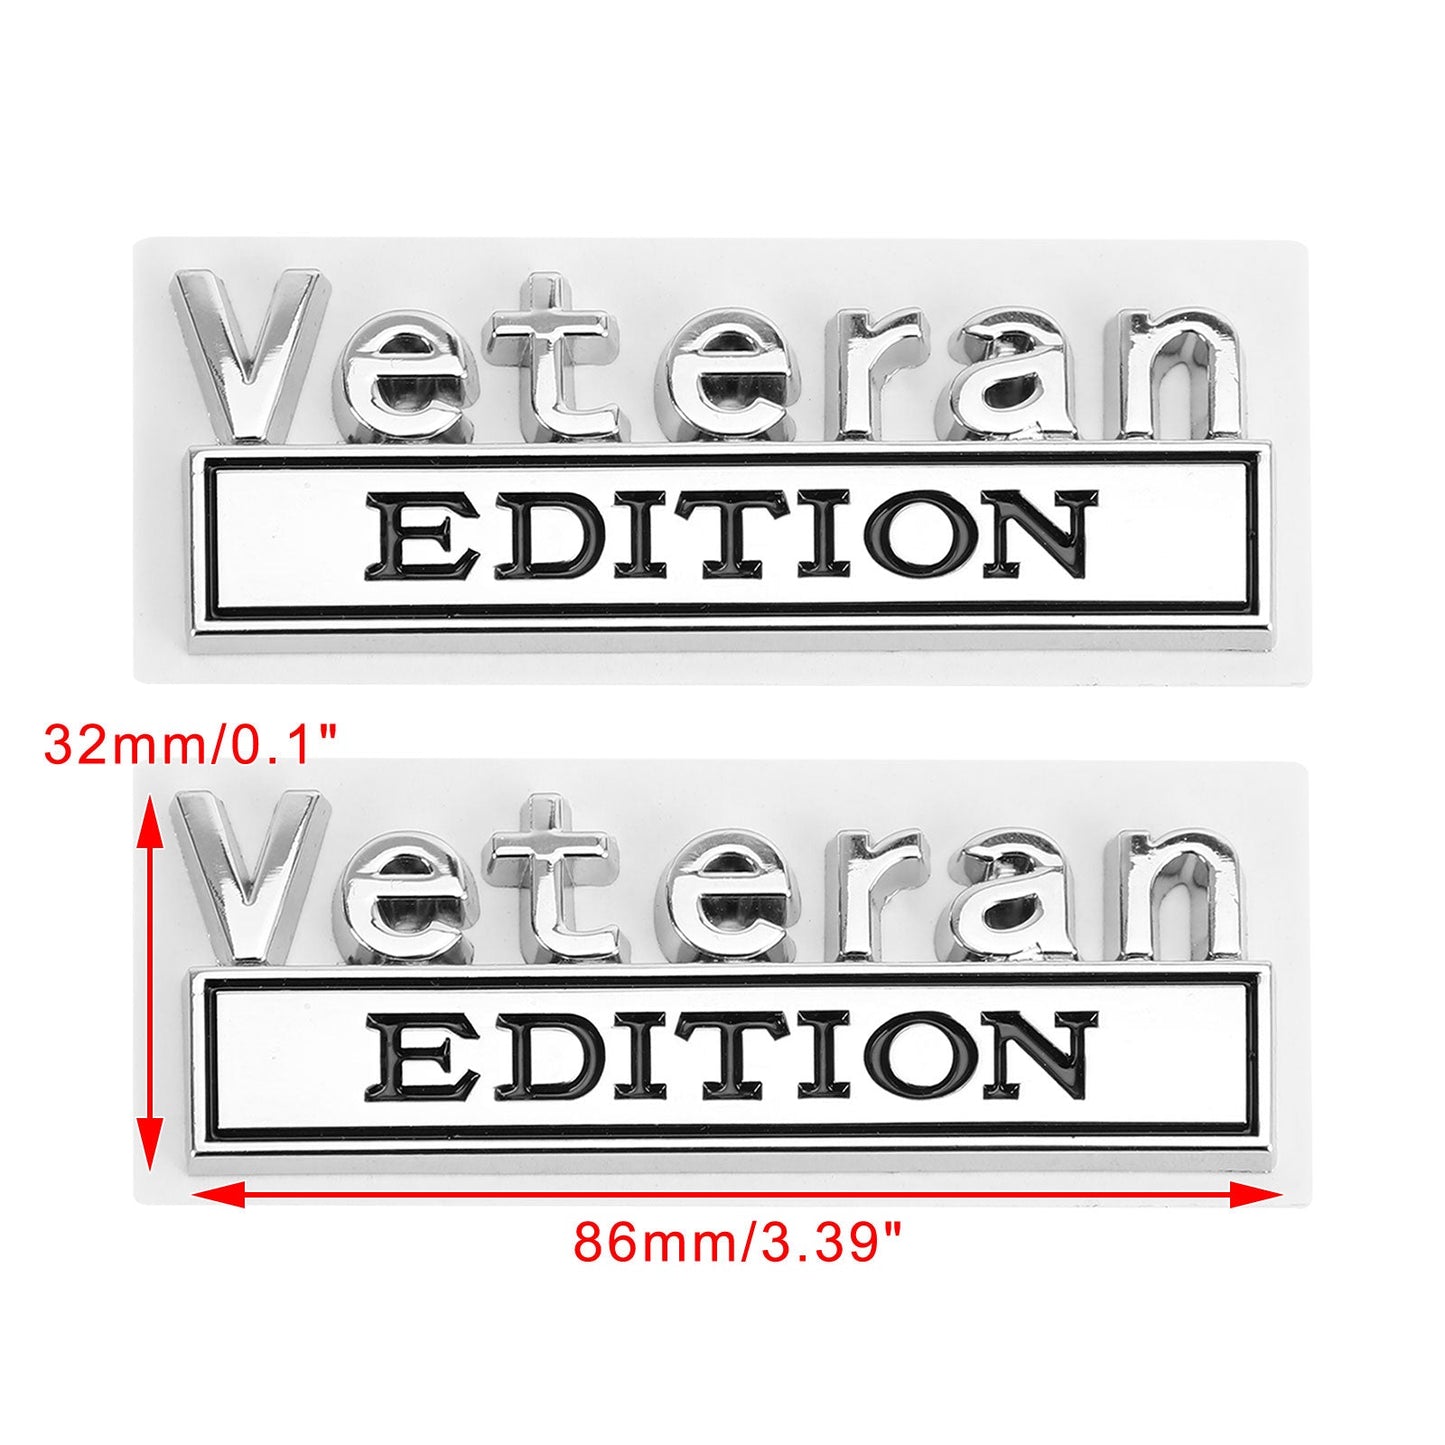 2 Stück Veteran Edition Emblem Abzeichen Auto LKW Heckklappe Aufkleber Aufkleber Legierung